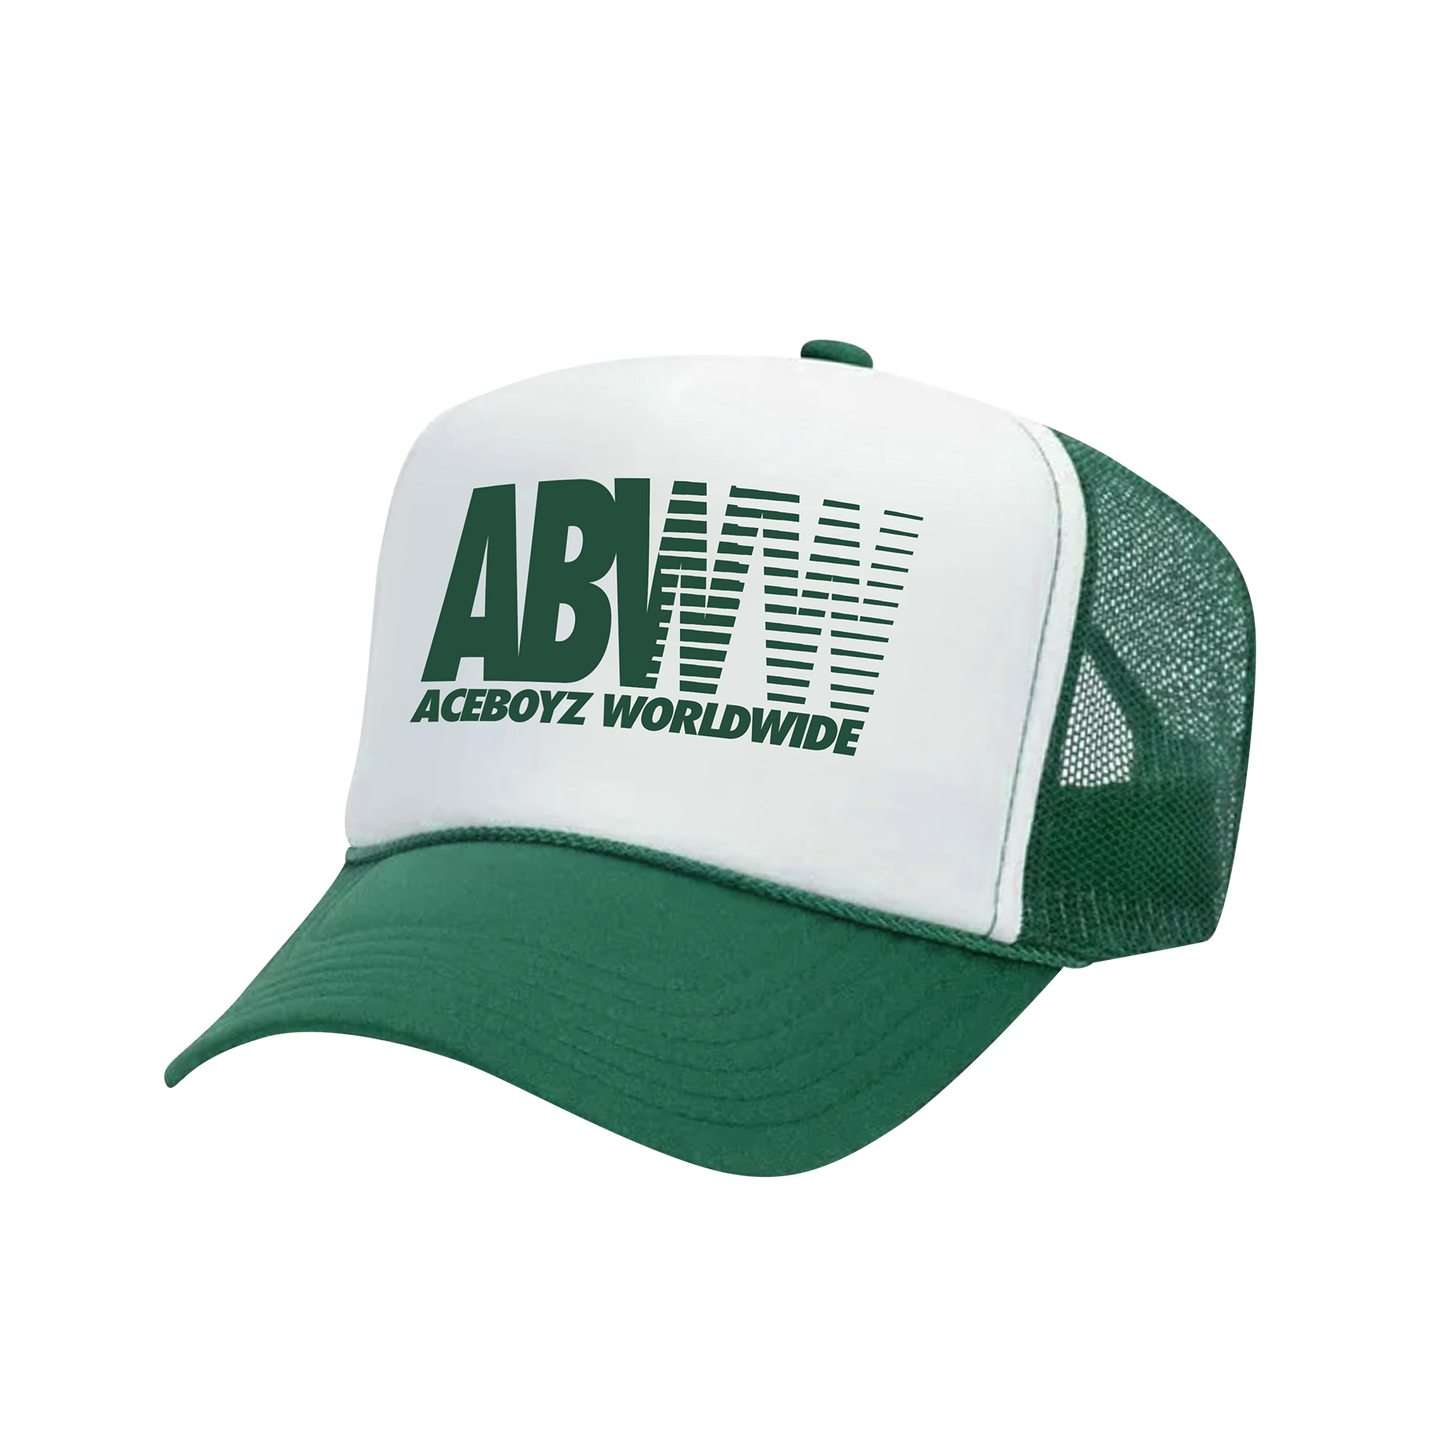 ABW TRADITION FOAM TRUCKER HAT - GREEN/WHITE